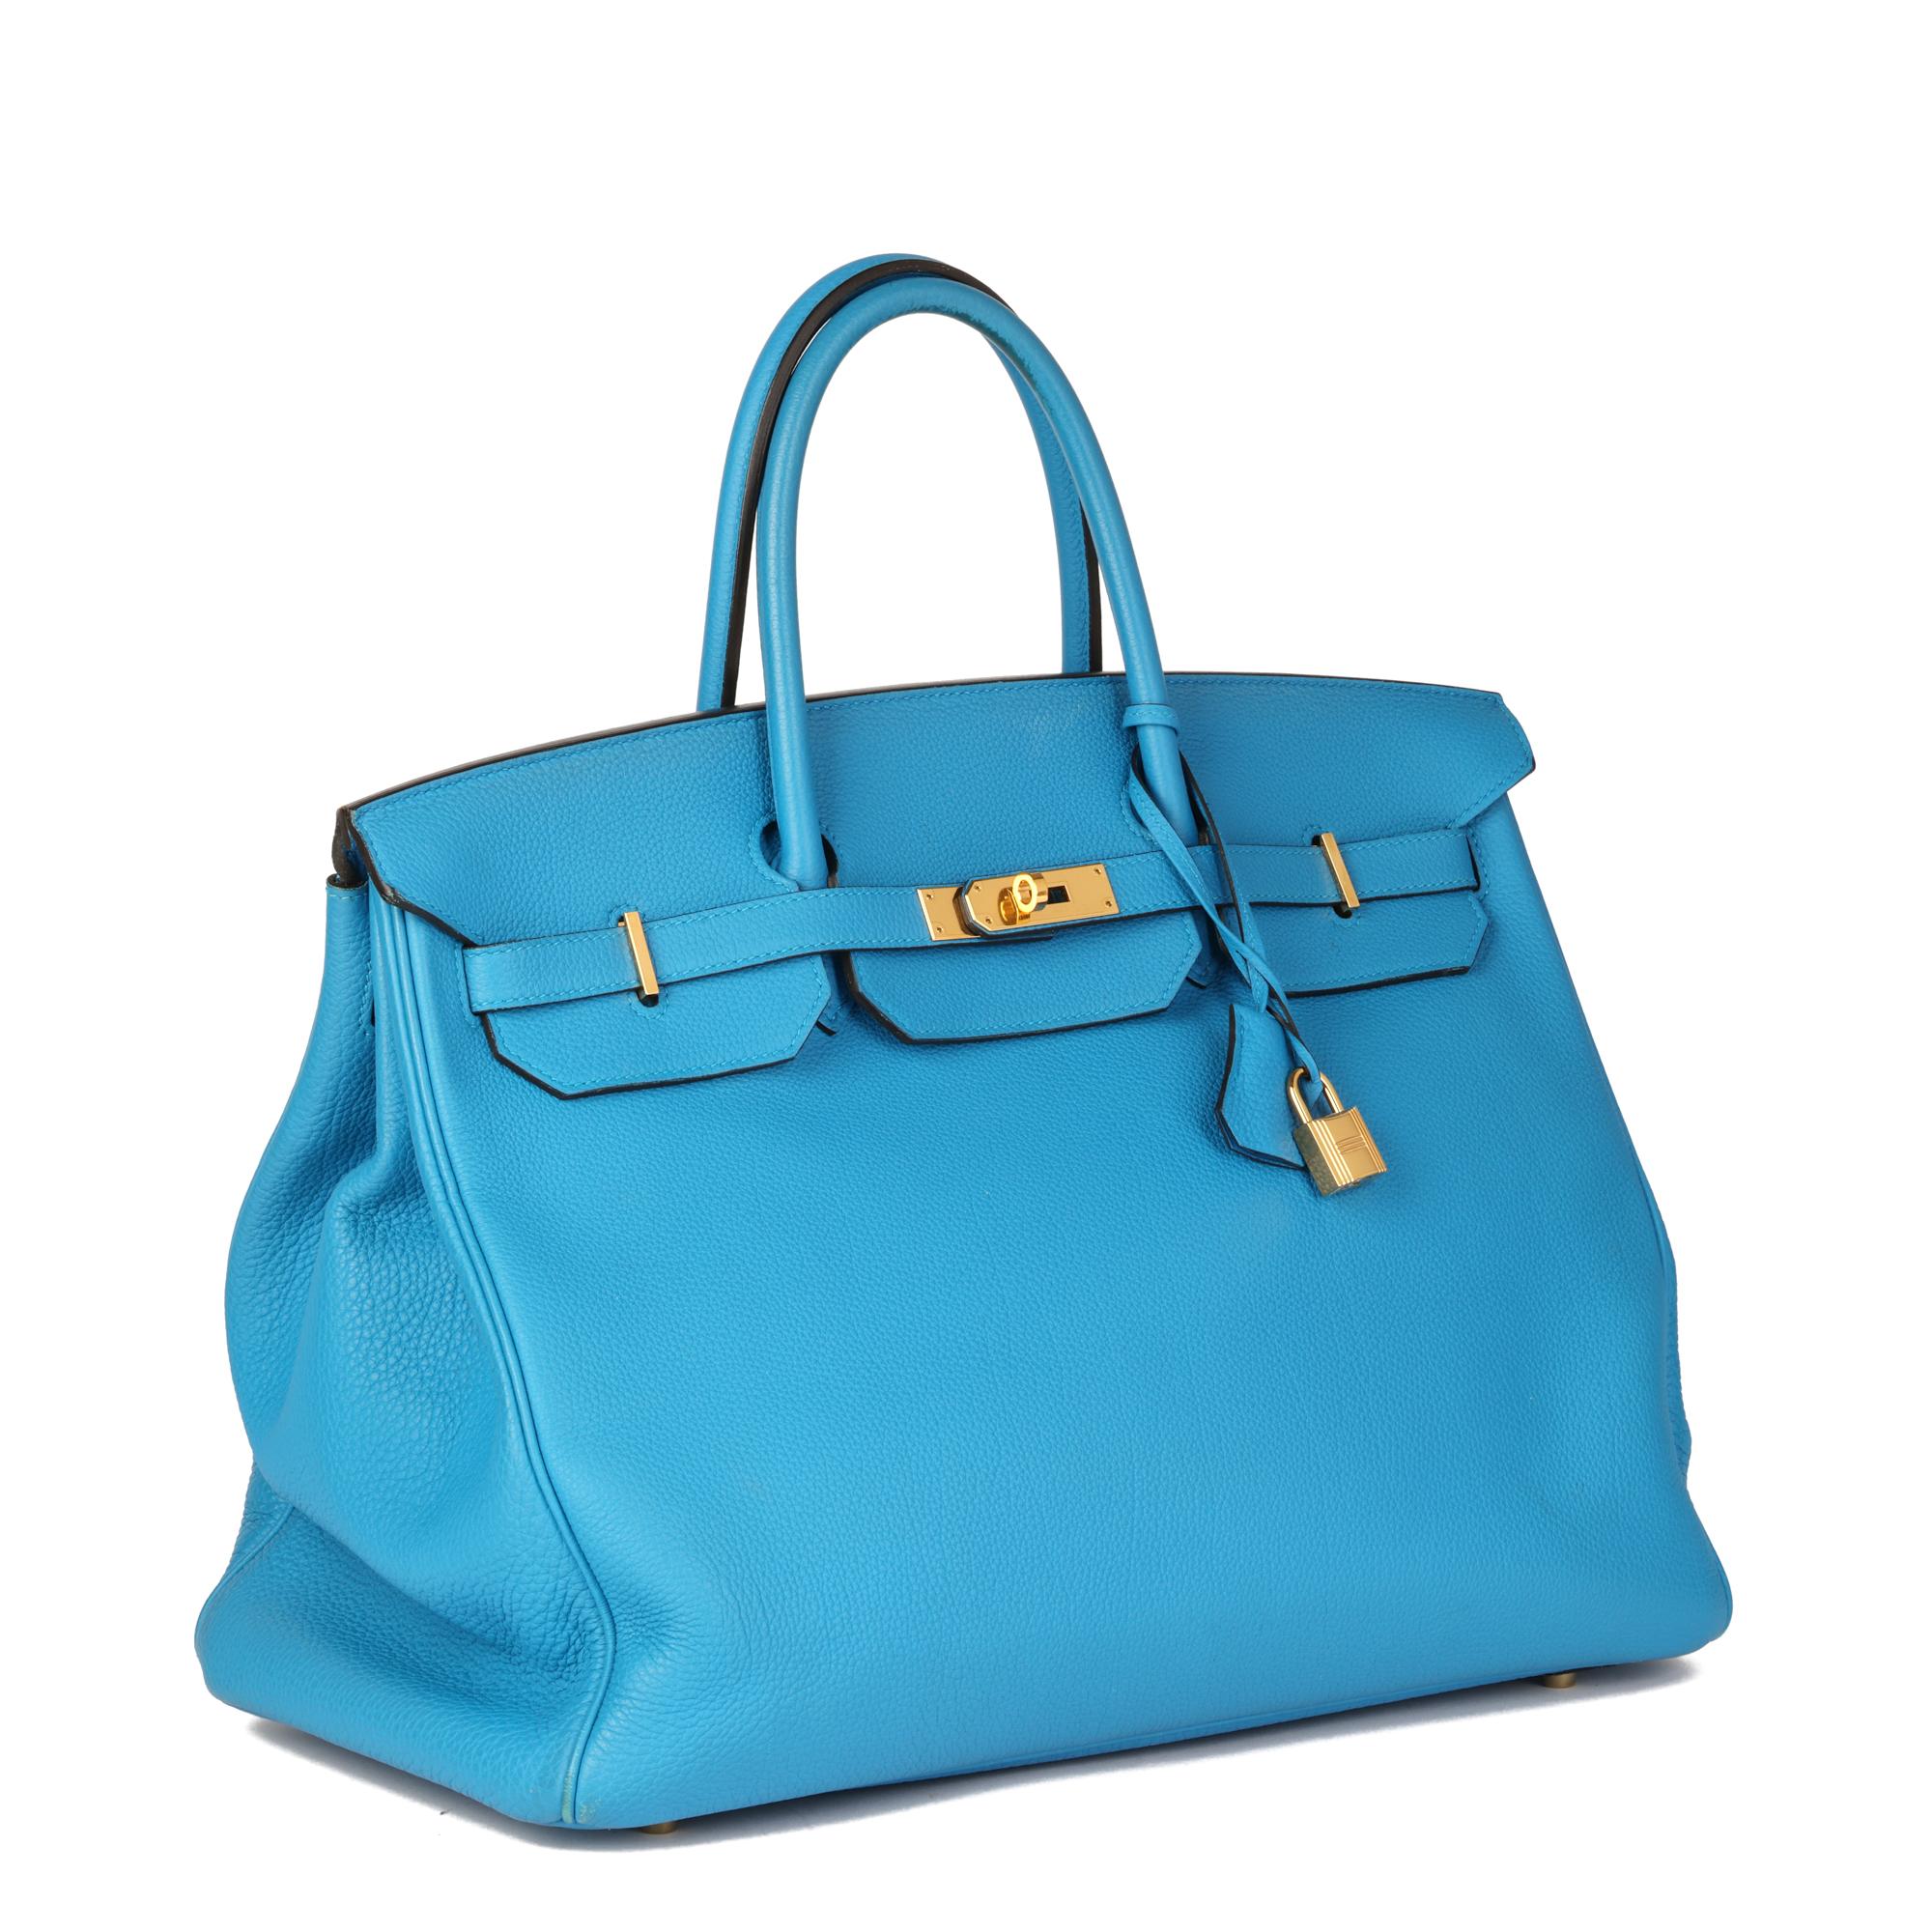 Hermès Blau Sansibar Togo Leder Birkin 40cm


KONDITIONSNOTEN
Das Äußere ist in sehr gutem Zustand mit leichten Gebrauchsspuren. Die Tasche wirkt im leeren Zustand schlabbrig.
Der Innenraum ist in ausgezeichnetem Zustand mit minimalen